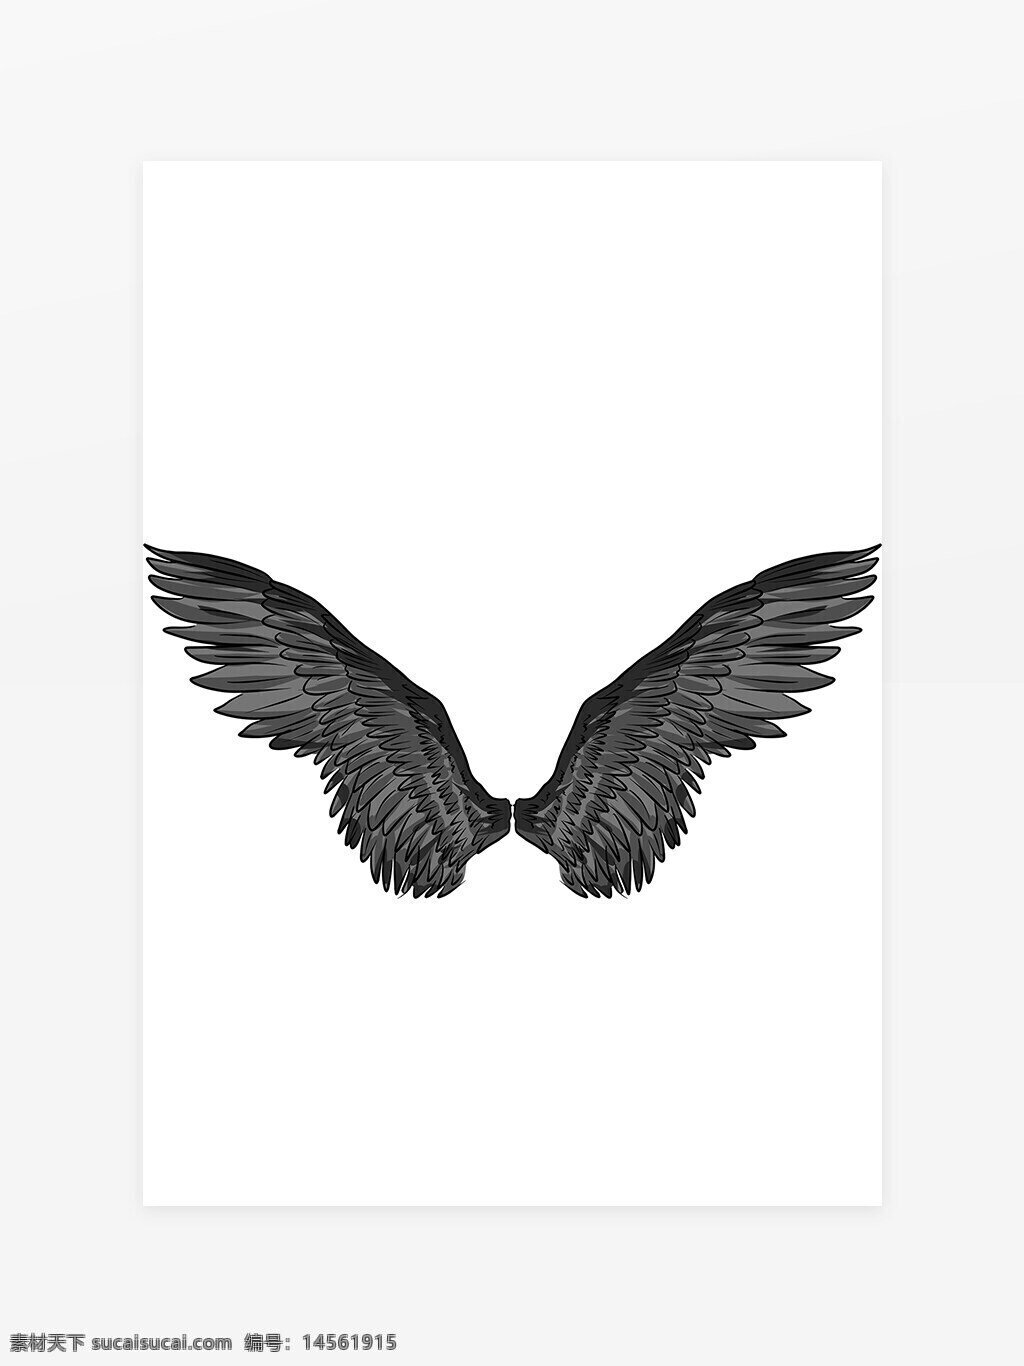 黑色羽毛 翅膀 天使恶魔之翼 羽翼 飞翔 飞行